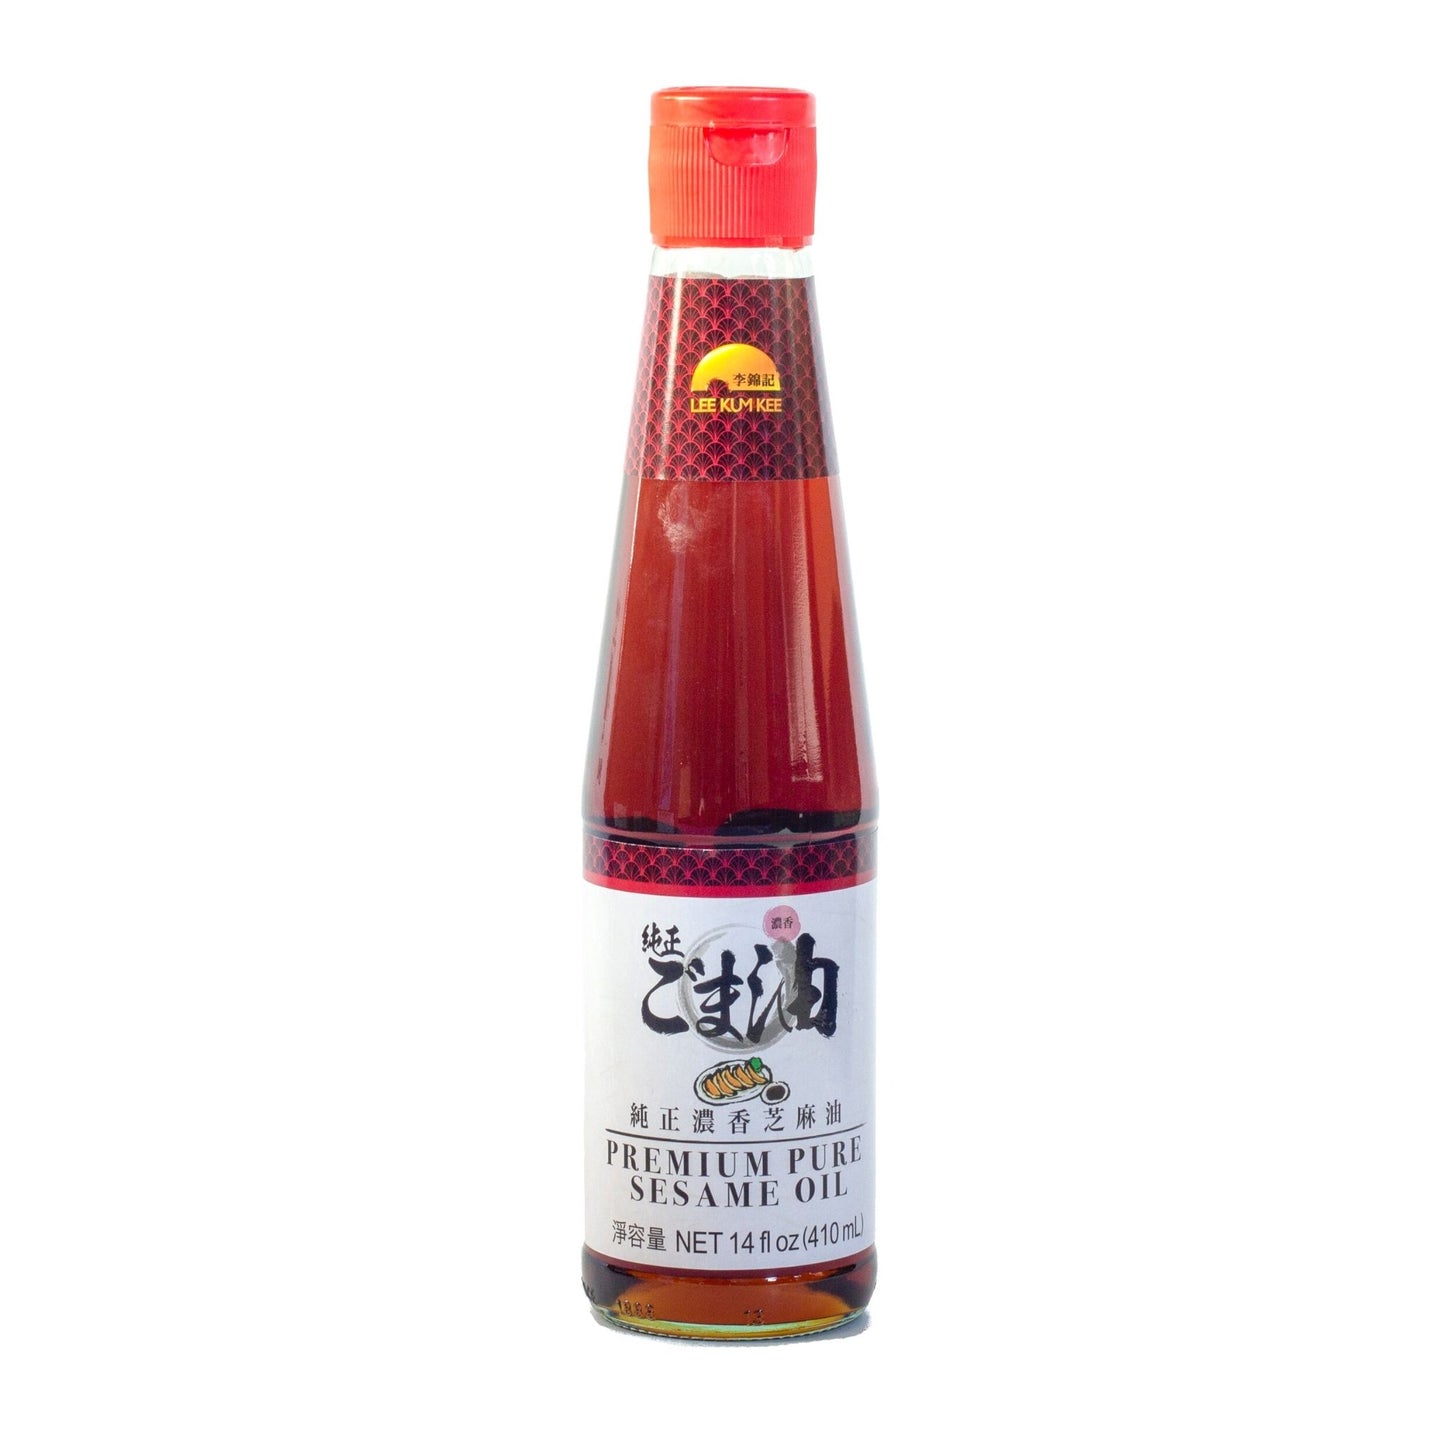 LKK Premium Pure Sesame Oil 纯正浓香麻油 (14 OZ)